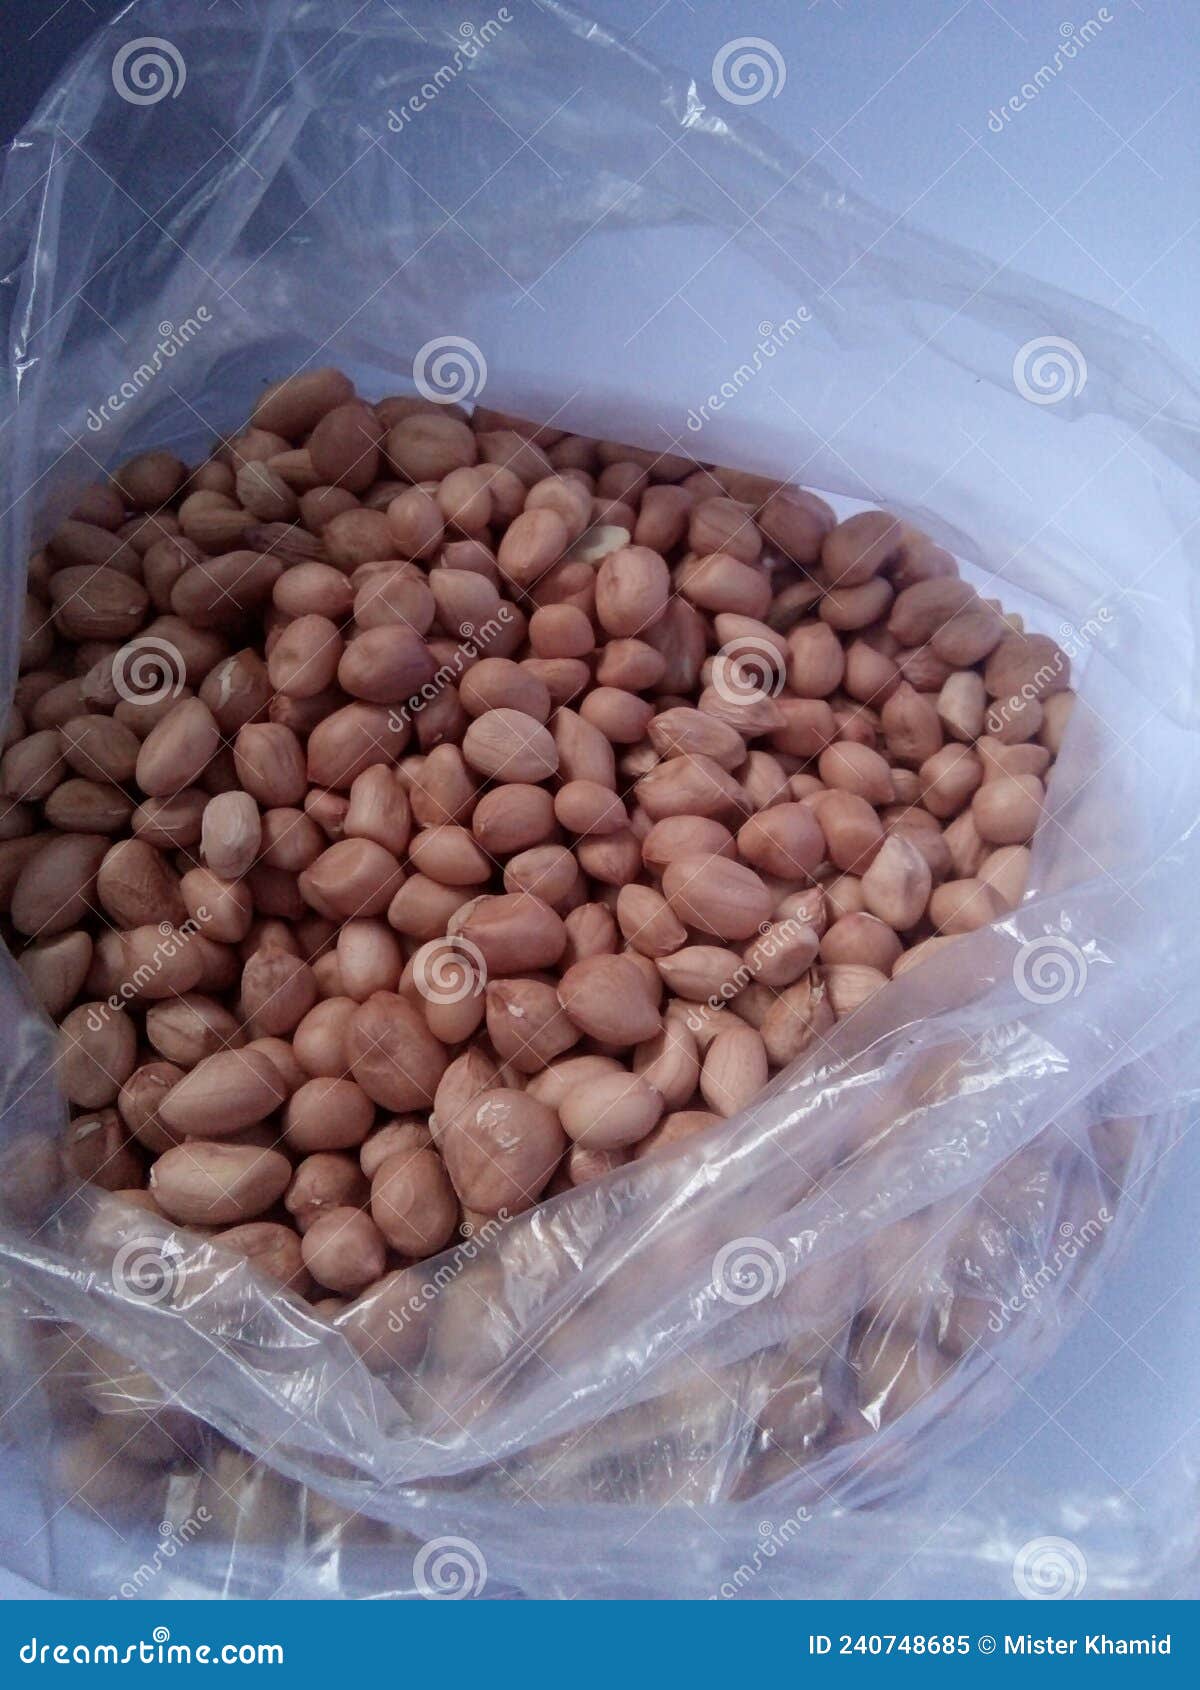 Kacang tanah